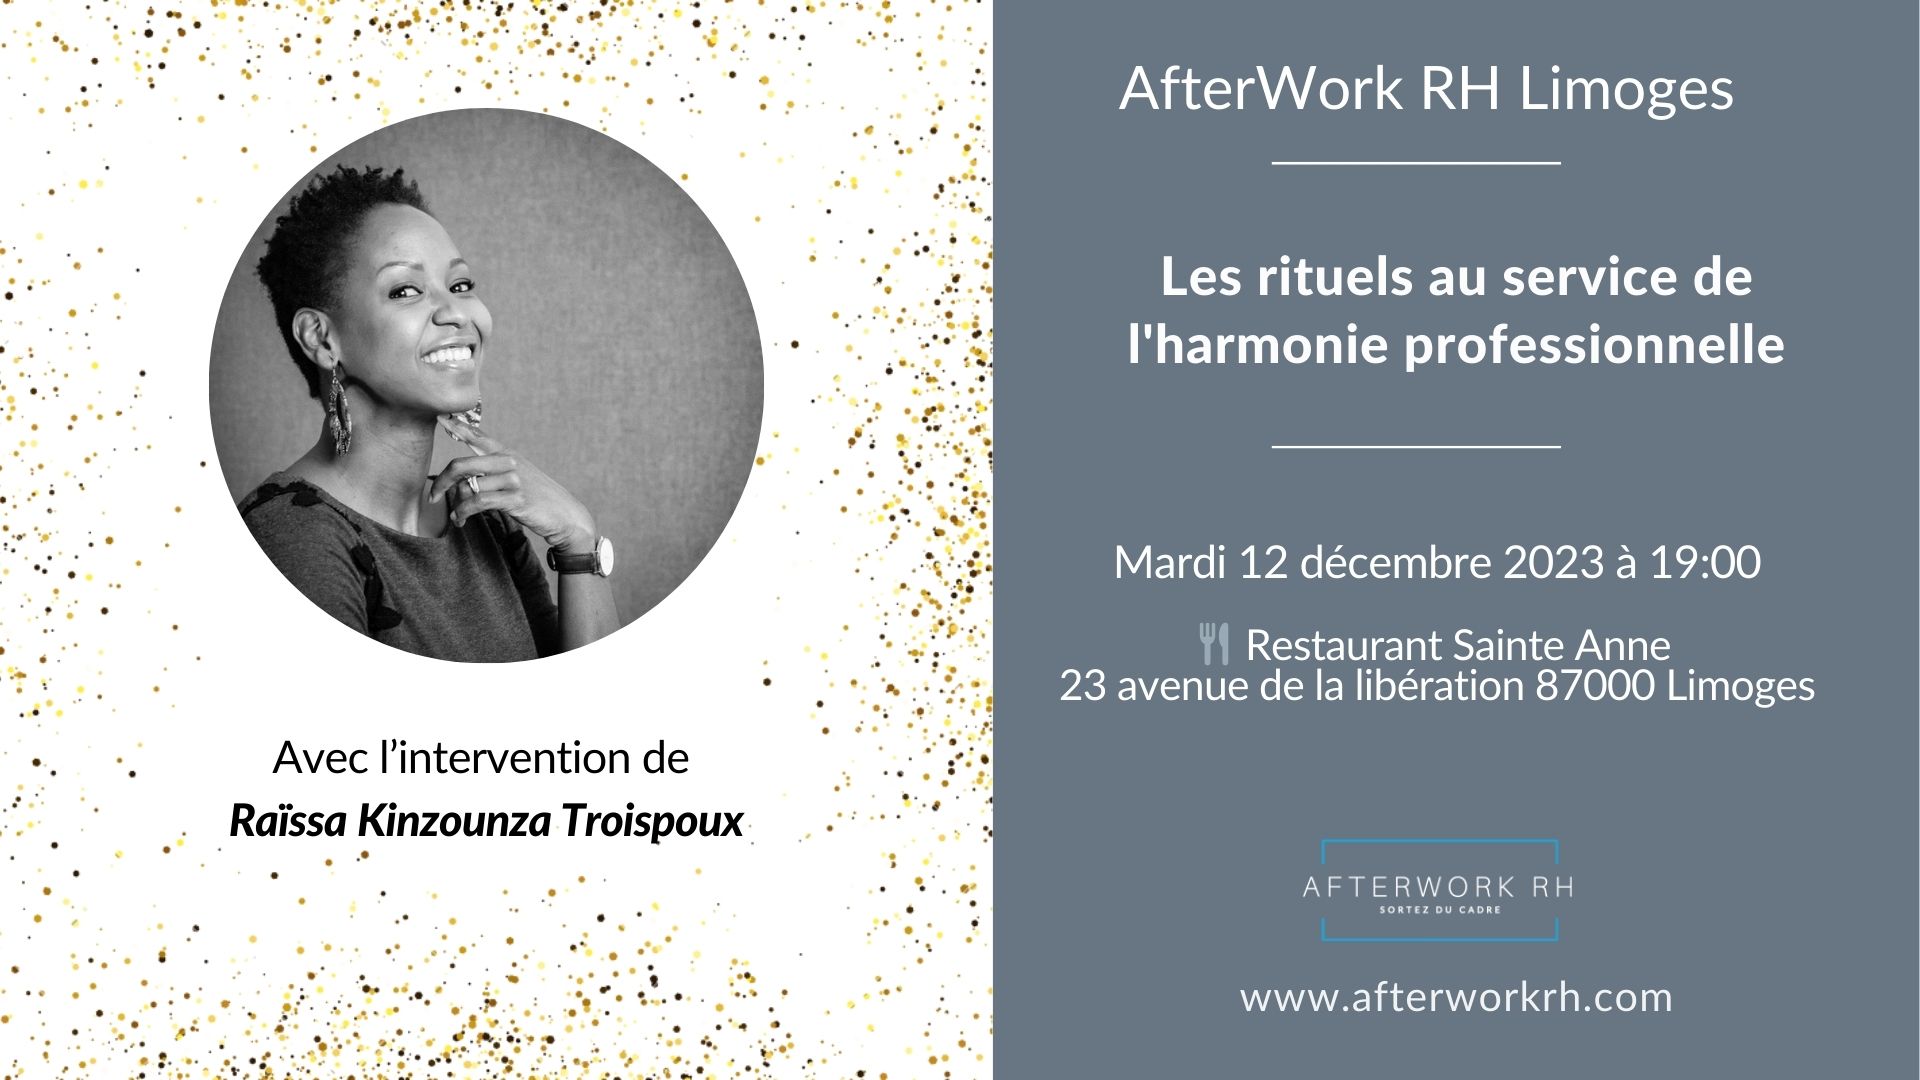 AfterWork RH Limoges - Les rituels au service de l'harmonie professionnelle - décembre 23